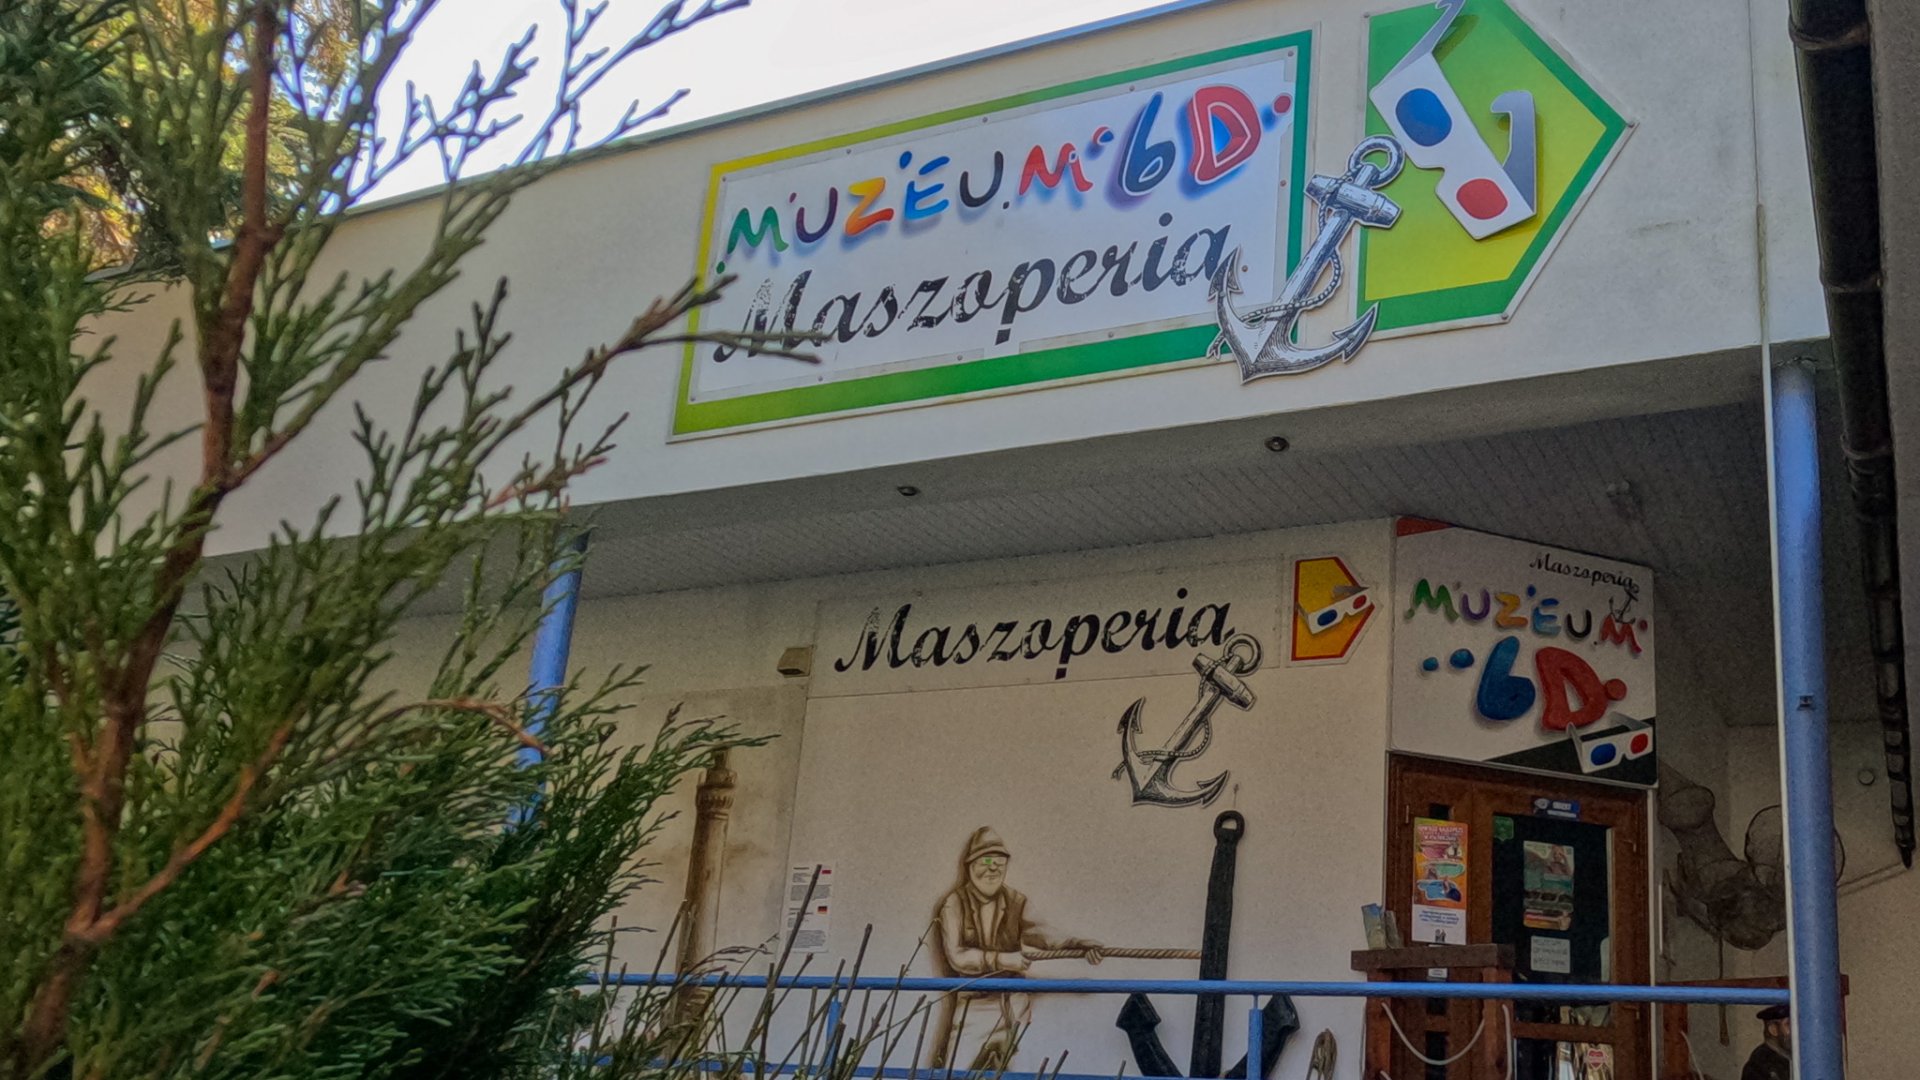 Muzeum 6D Maszoperia